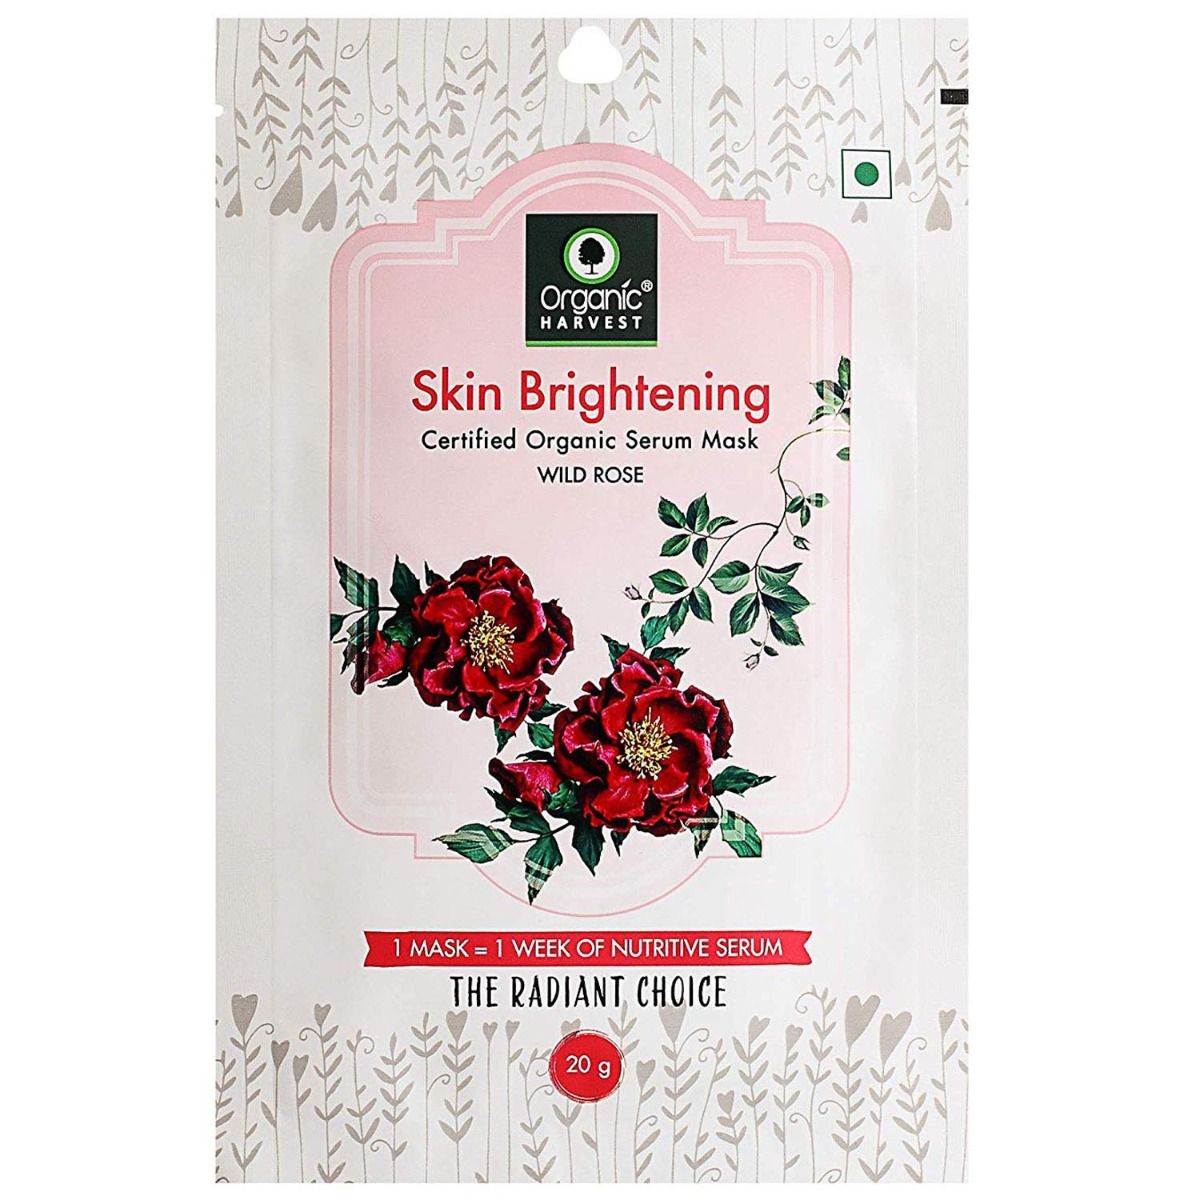 Organic Harvest Skin Brightening Serum Mask, 20 gm, Pack of 1 